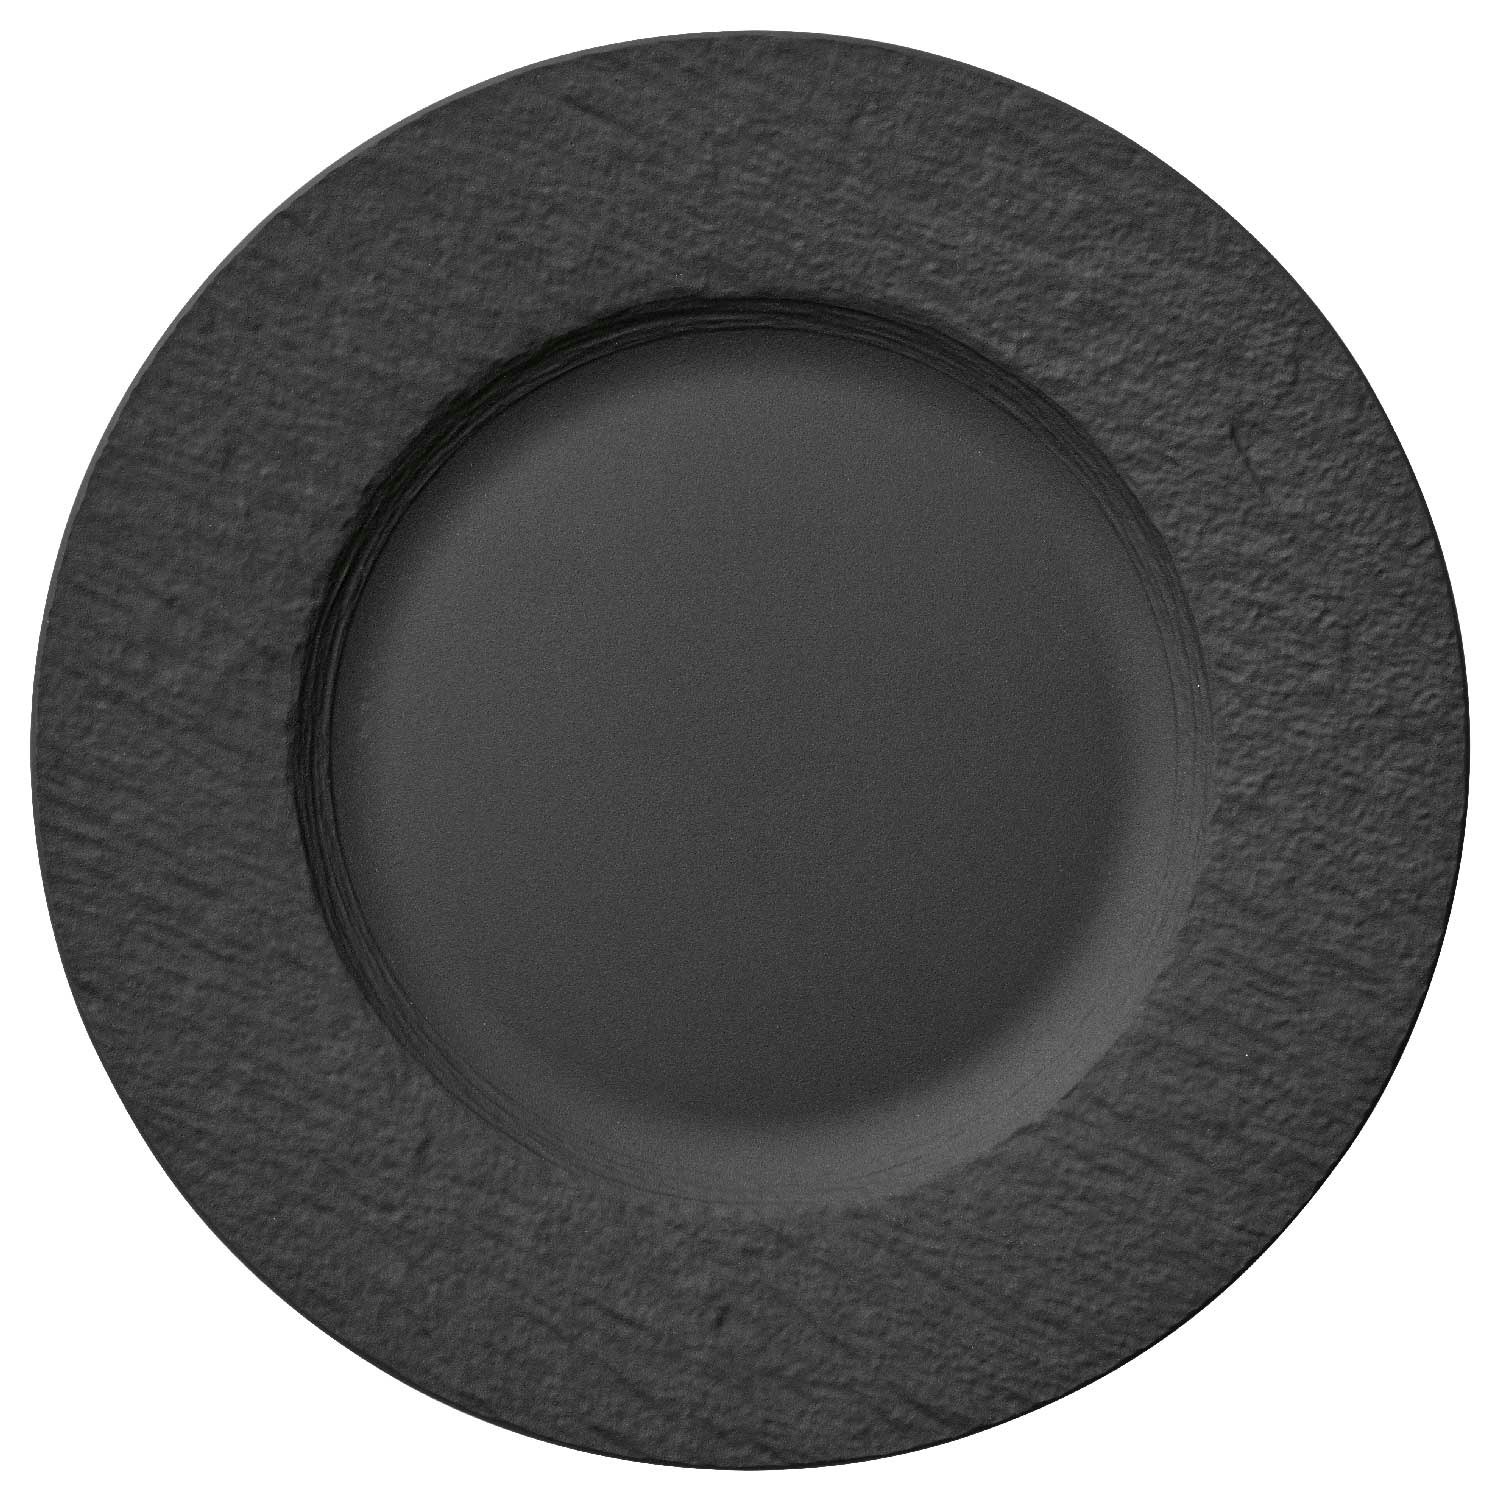 cm RoyalDesign Villeroy @ 27 Rock & - Dinner Manufacture Boch Plate,